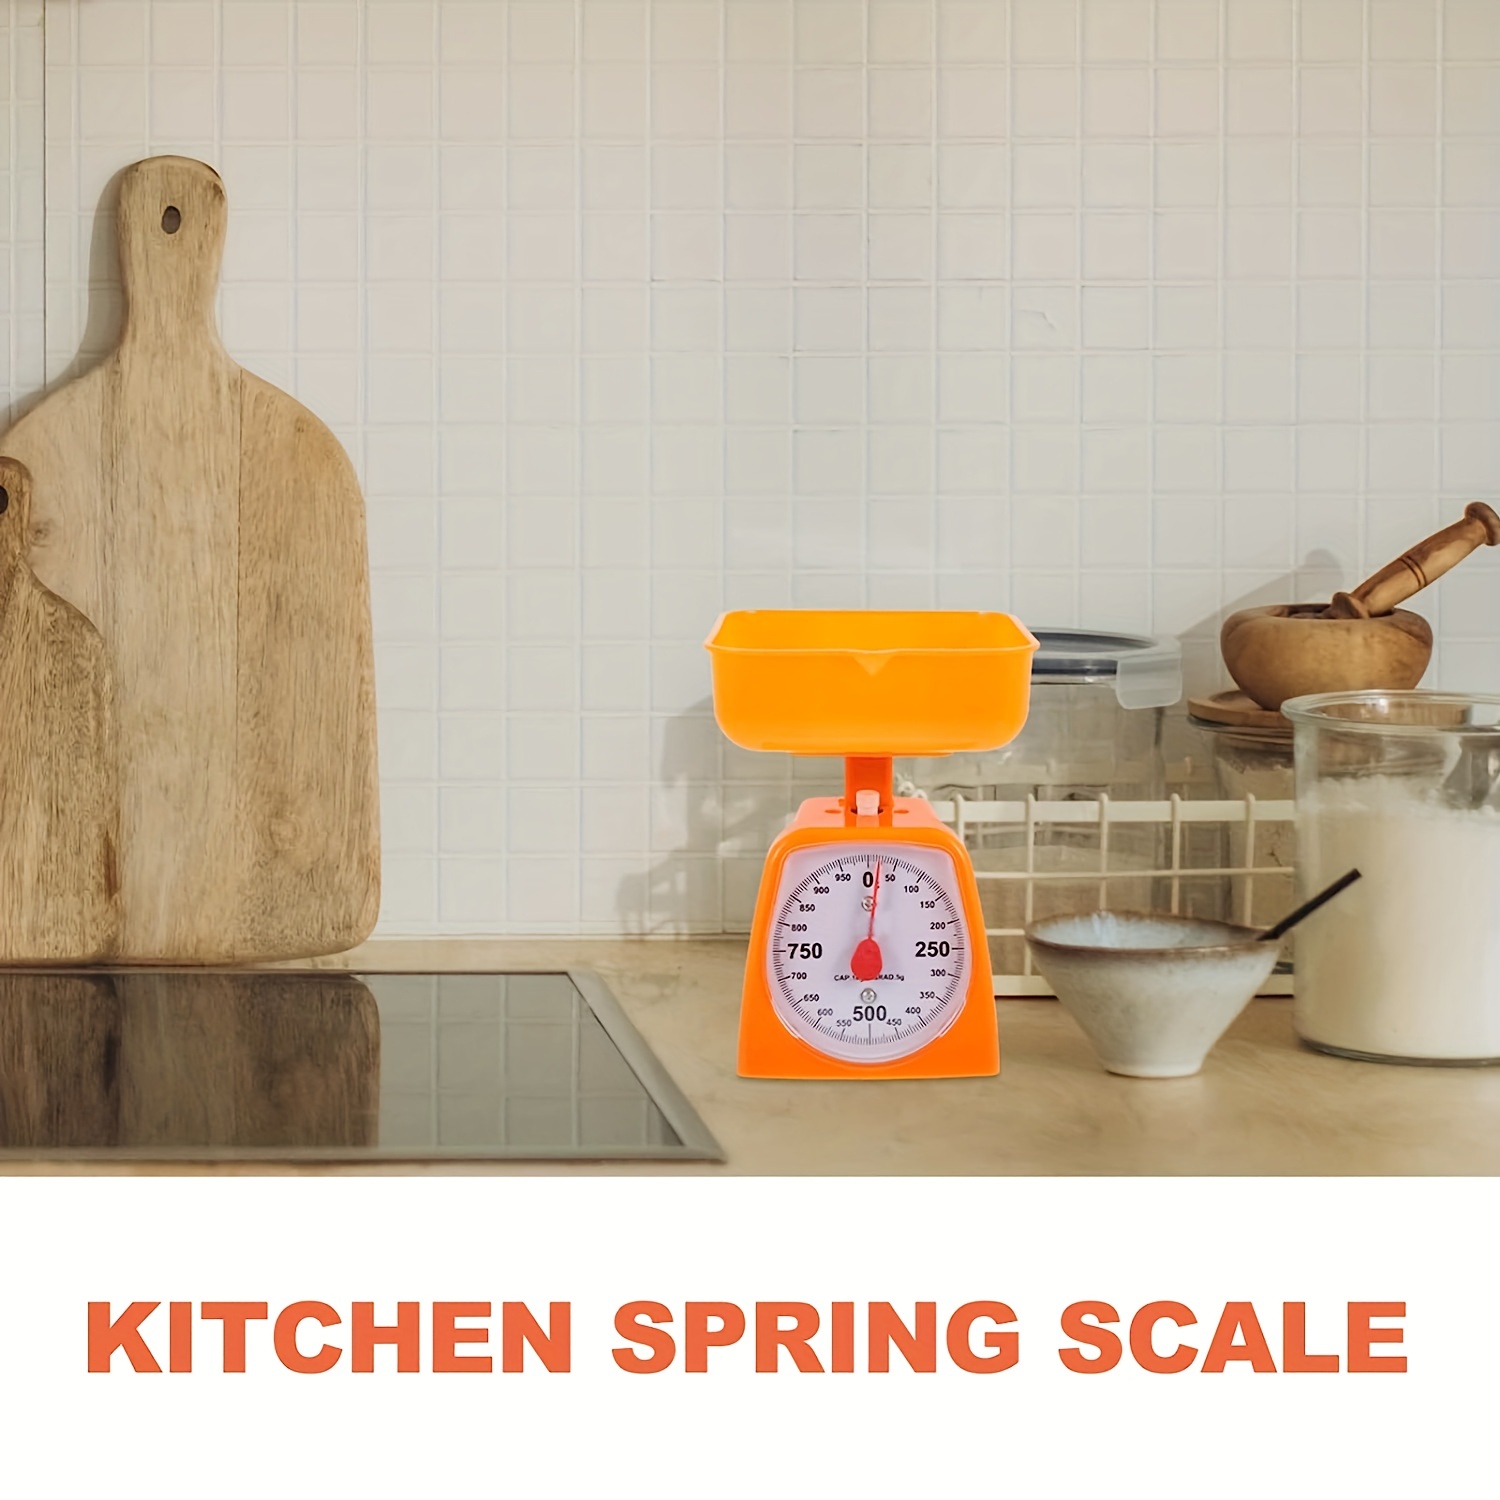 Industrial Kitchen Mechanical Kitchen Scale 10 kg - Kitchen Craft